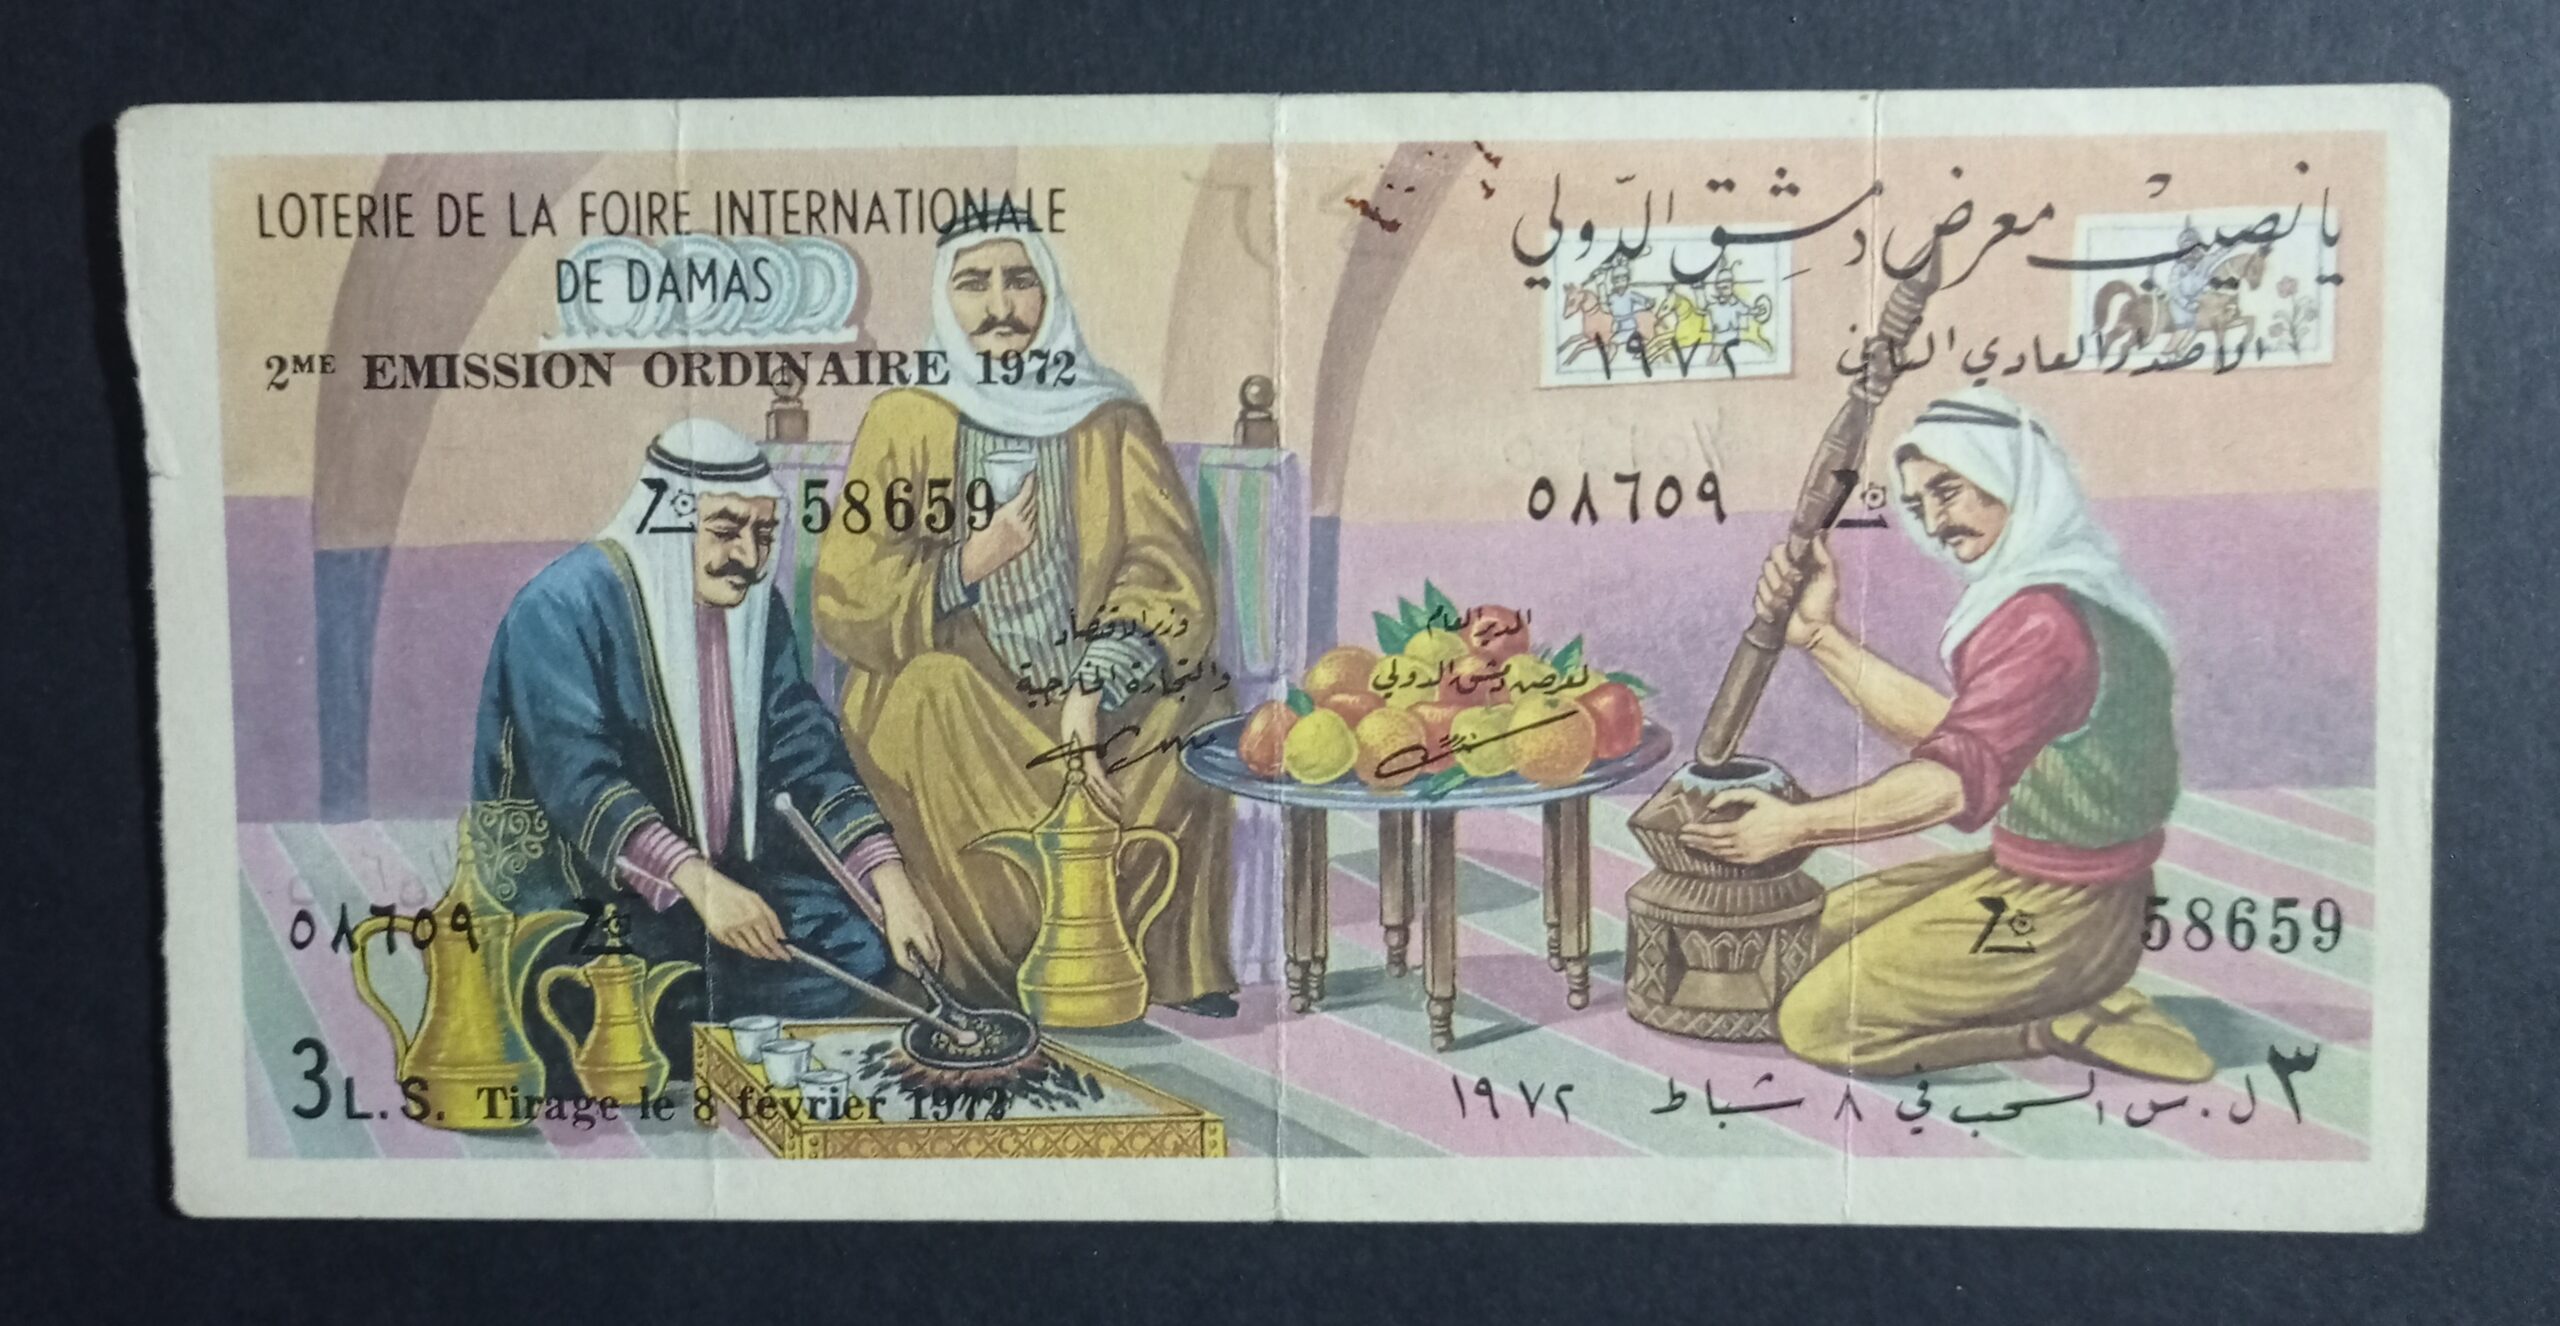 التاريخ السوري المعاصر - يانصيب معرض دمشق الدولي - الإصدار العادي الثاني عام 1972